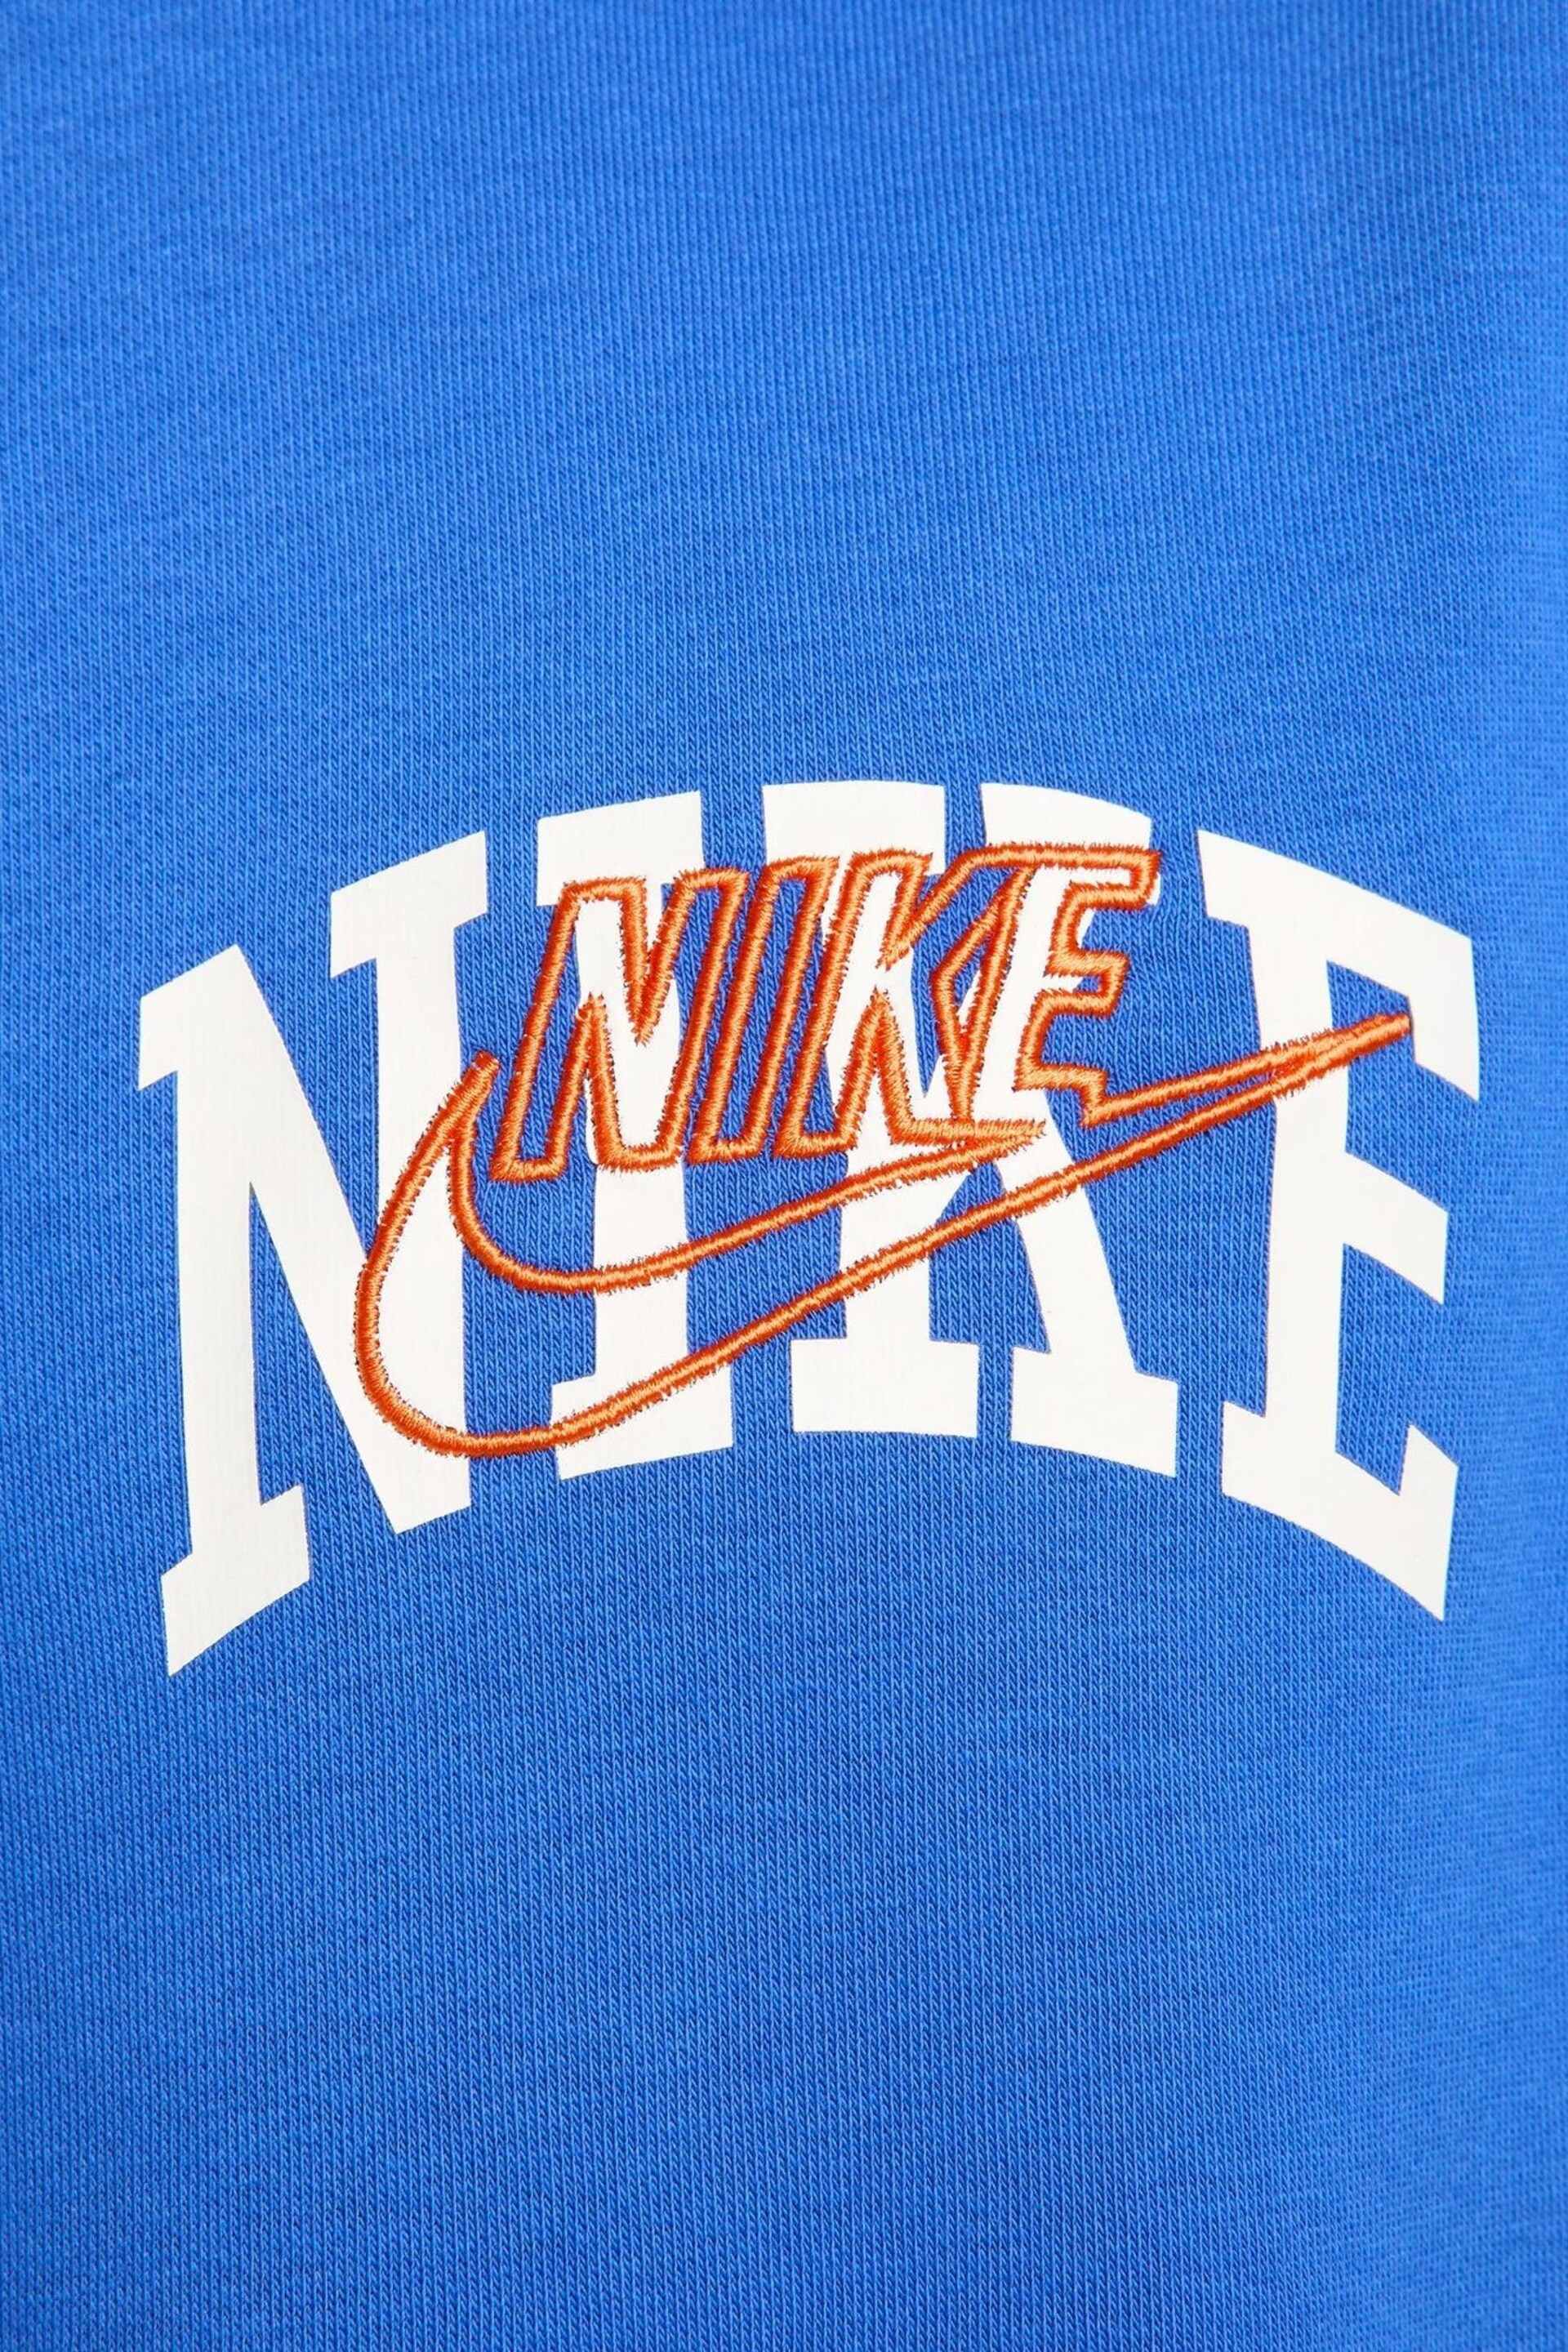 Nike Navy Club Fleece Crew Sweatshirt - Image 4 of 5